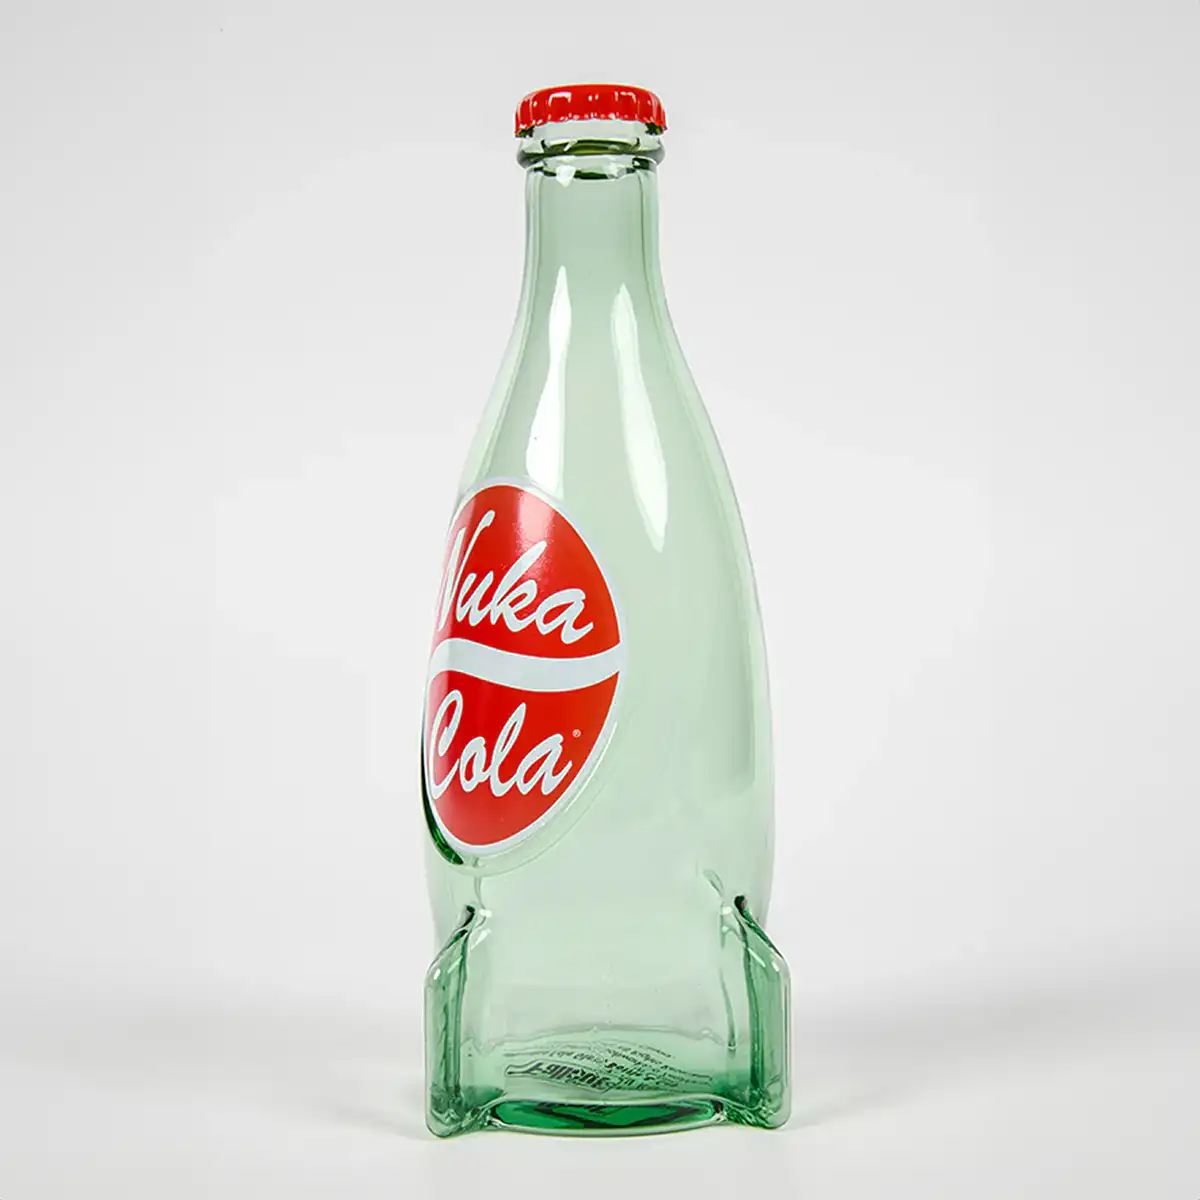 Fallout "Nuka Cola" Glasflasche und Kronkorken Image 7